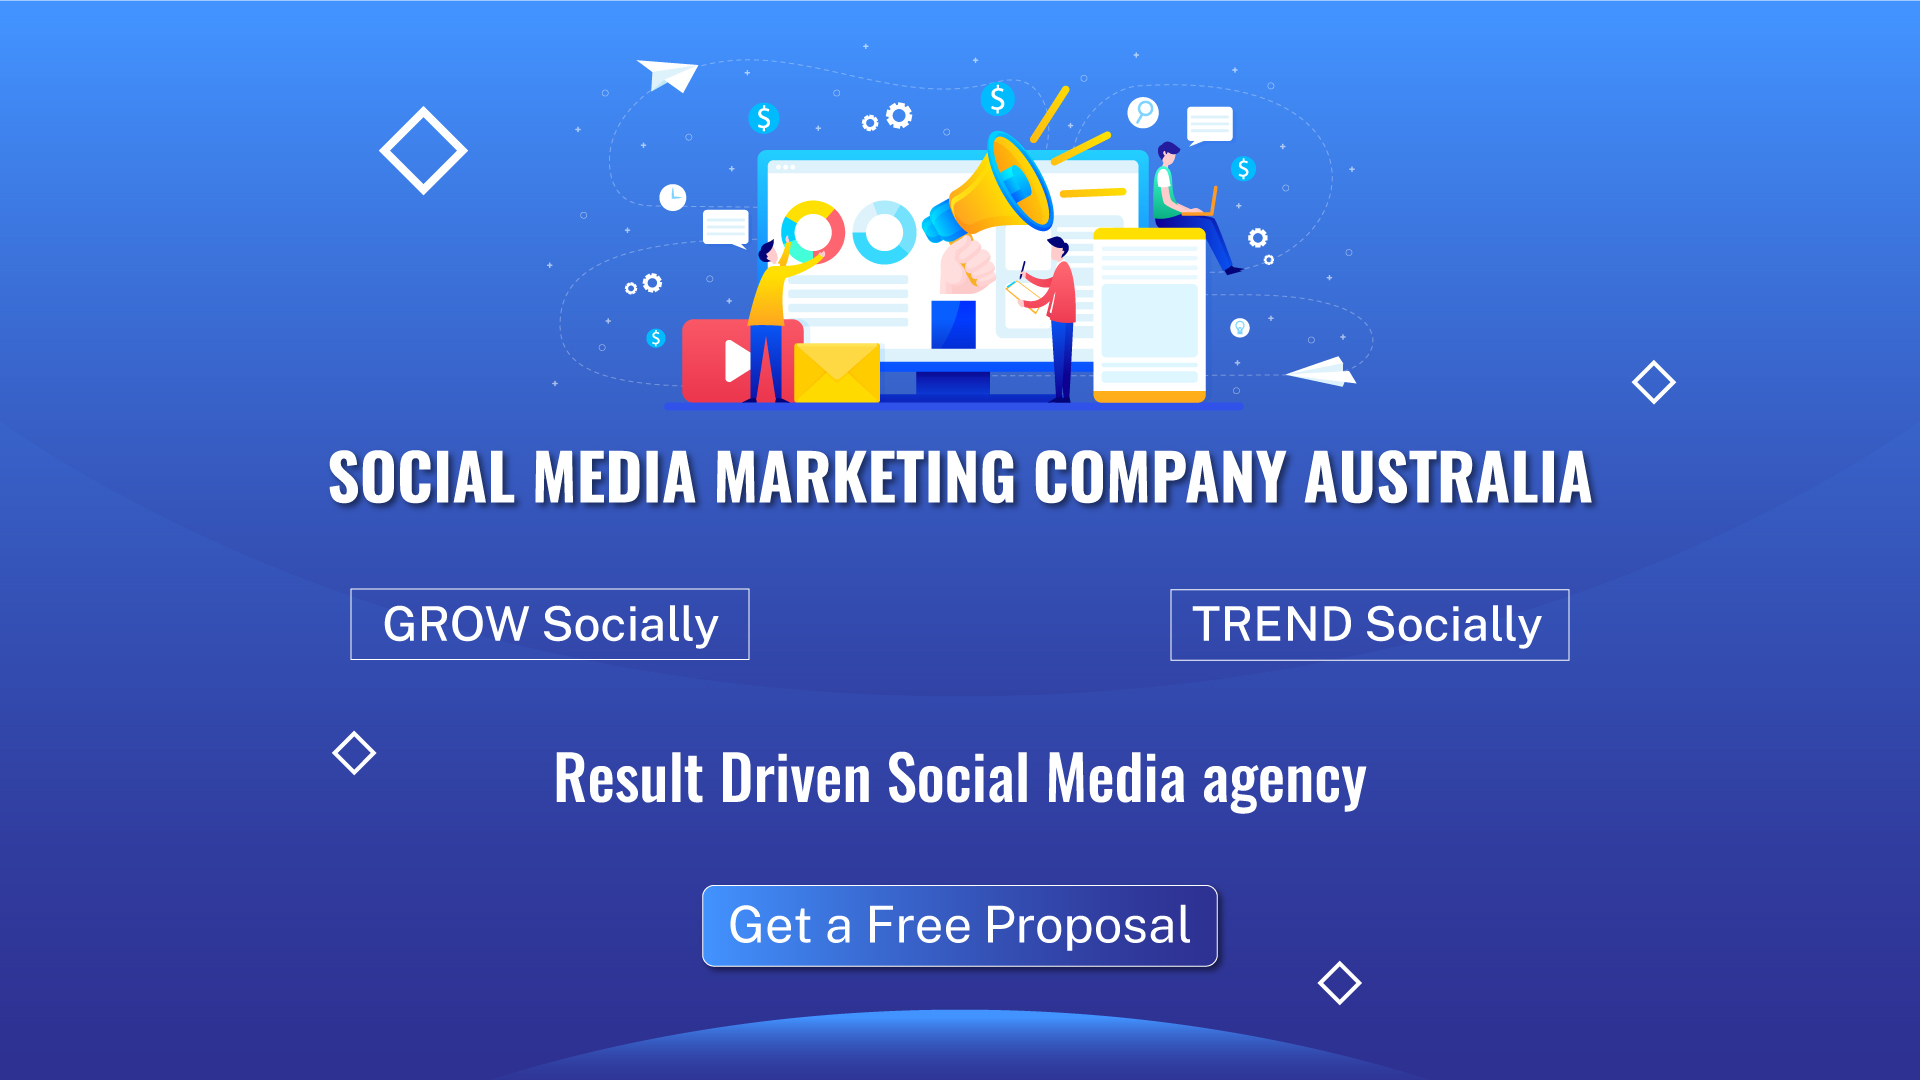 Social media marketing company Australia